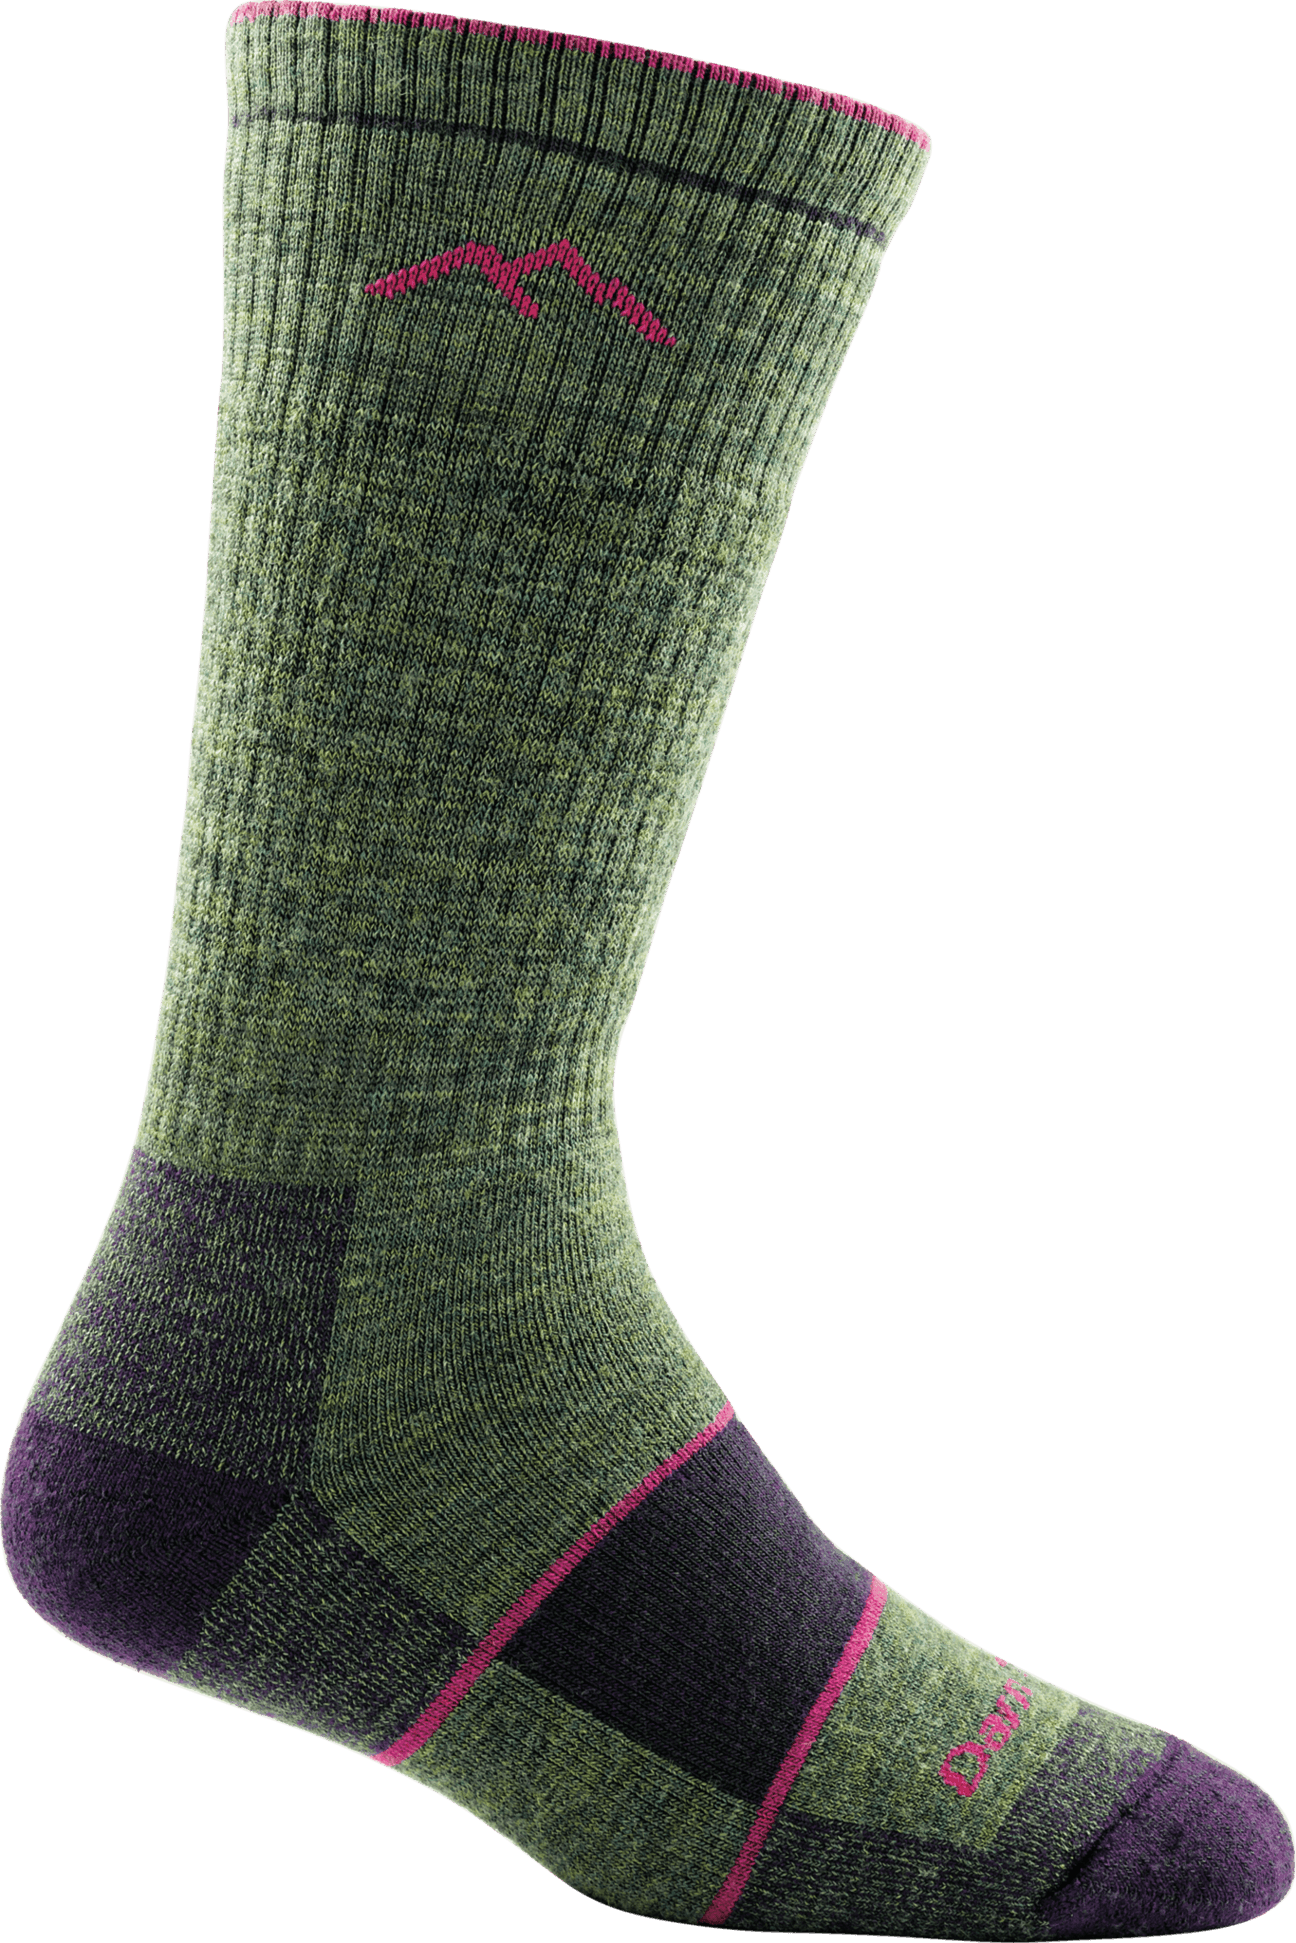 Hiker, Women's Full Cushion Boot Sock #1908 - Darn Tough - The Sock Monster